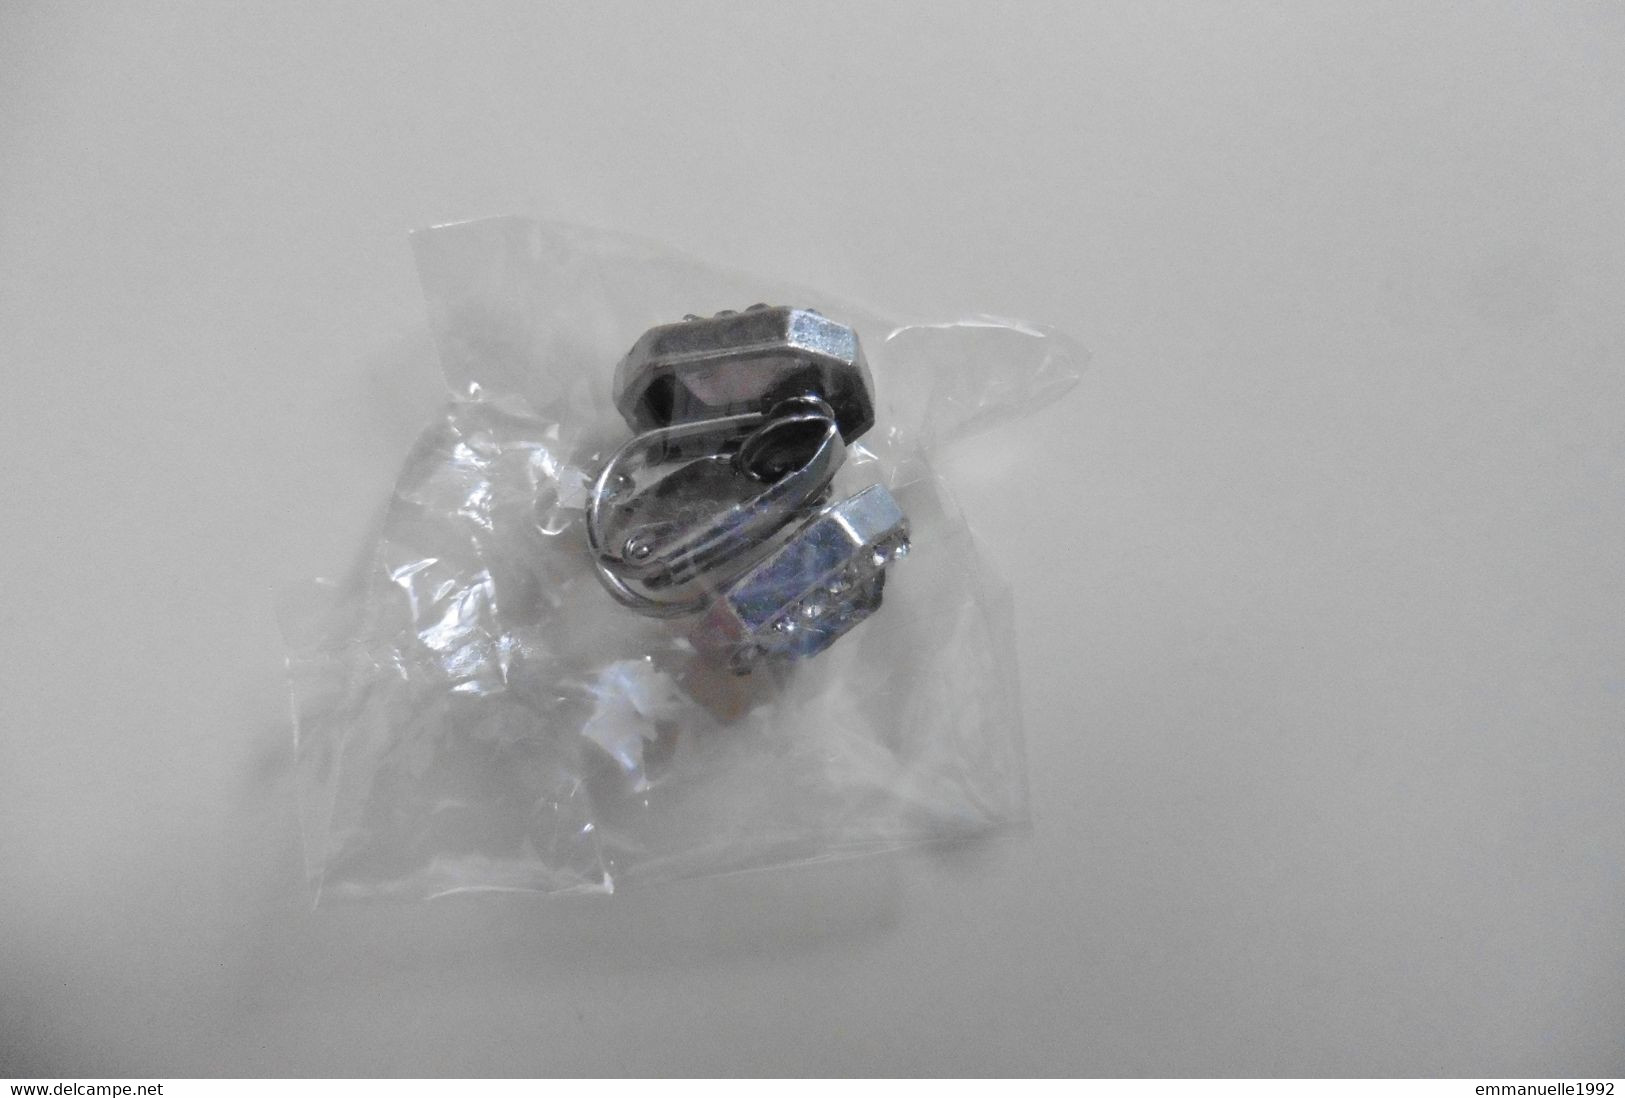 Neuf - Boucles d'oreilles clips lobes métal argenté cristaux strass transparent gris